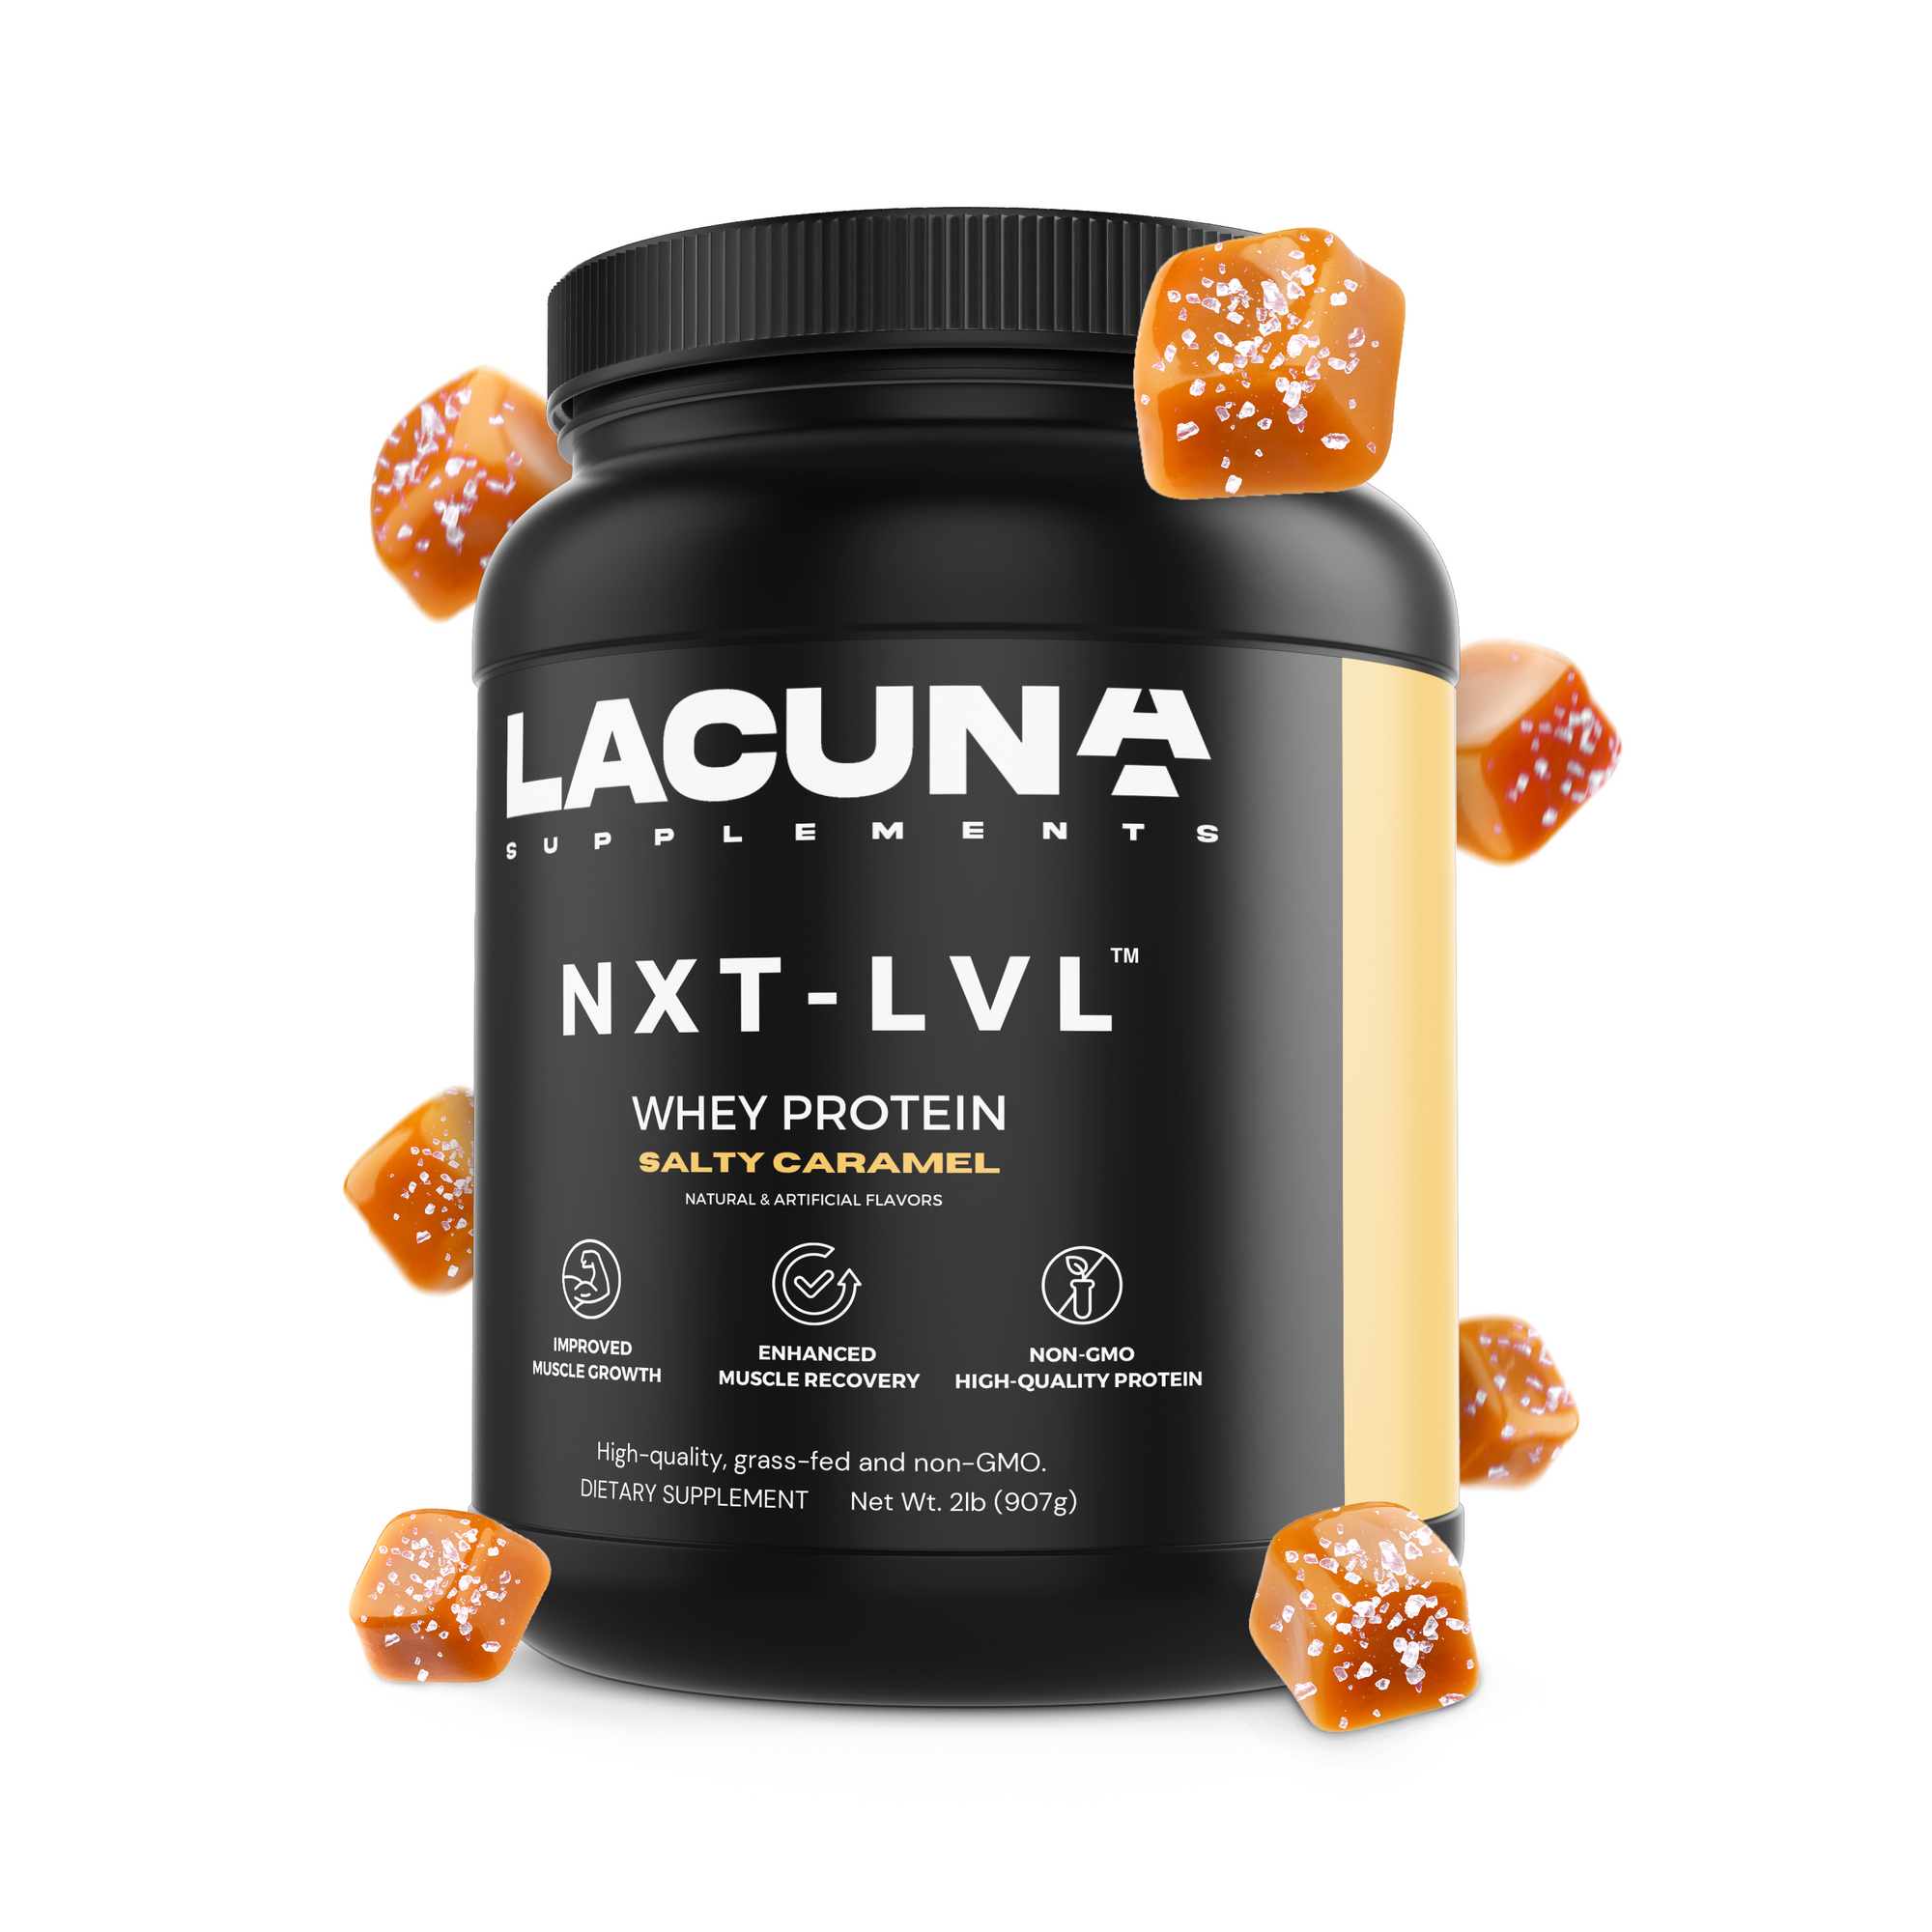 NXT-LVL Salty Caramel